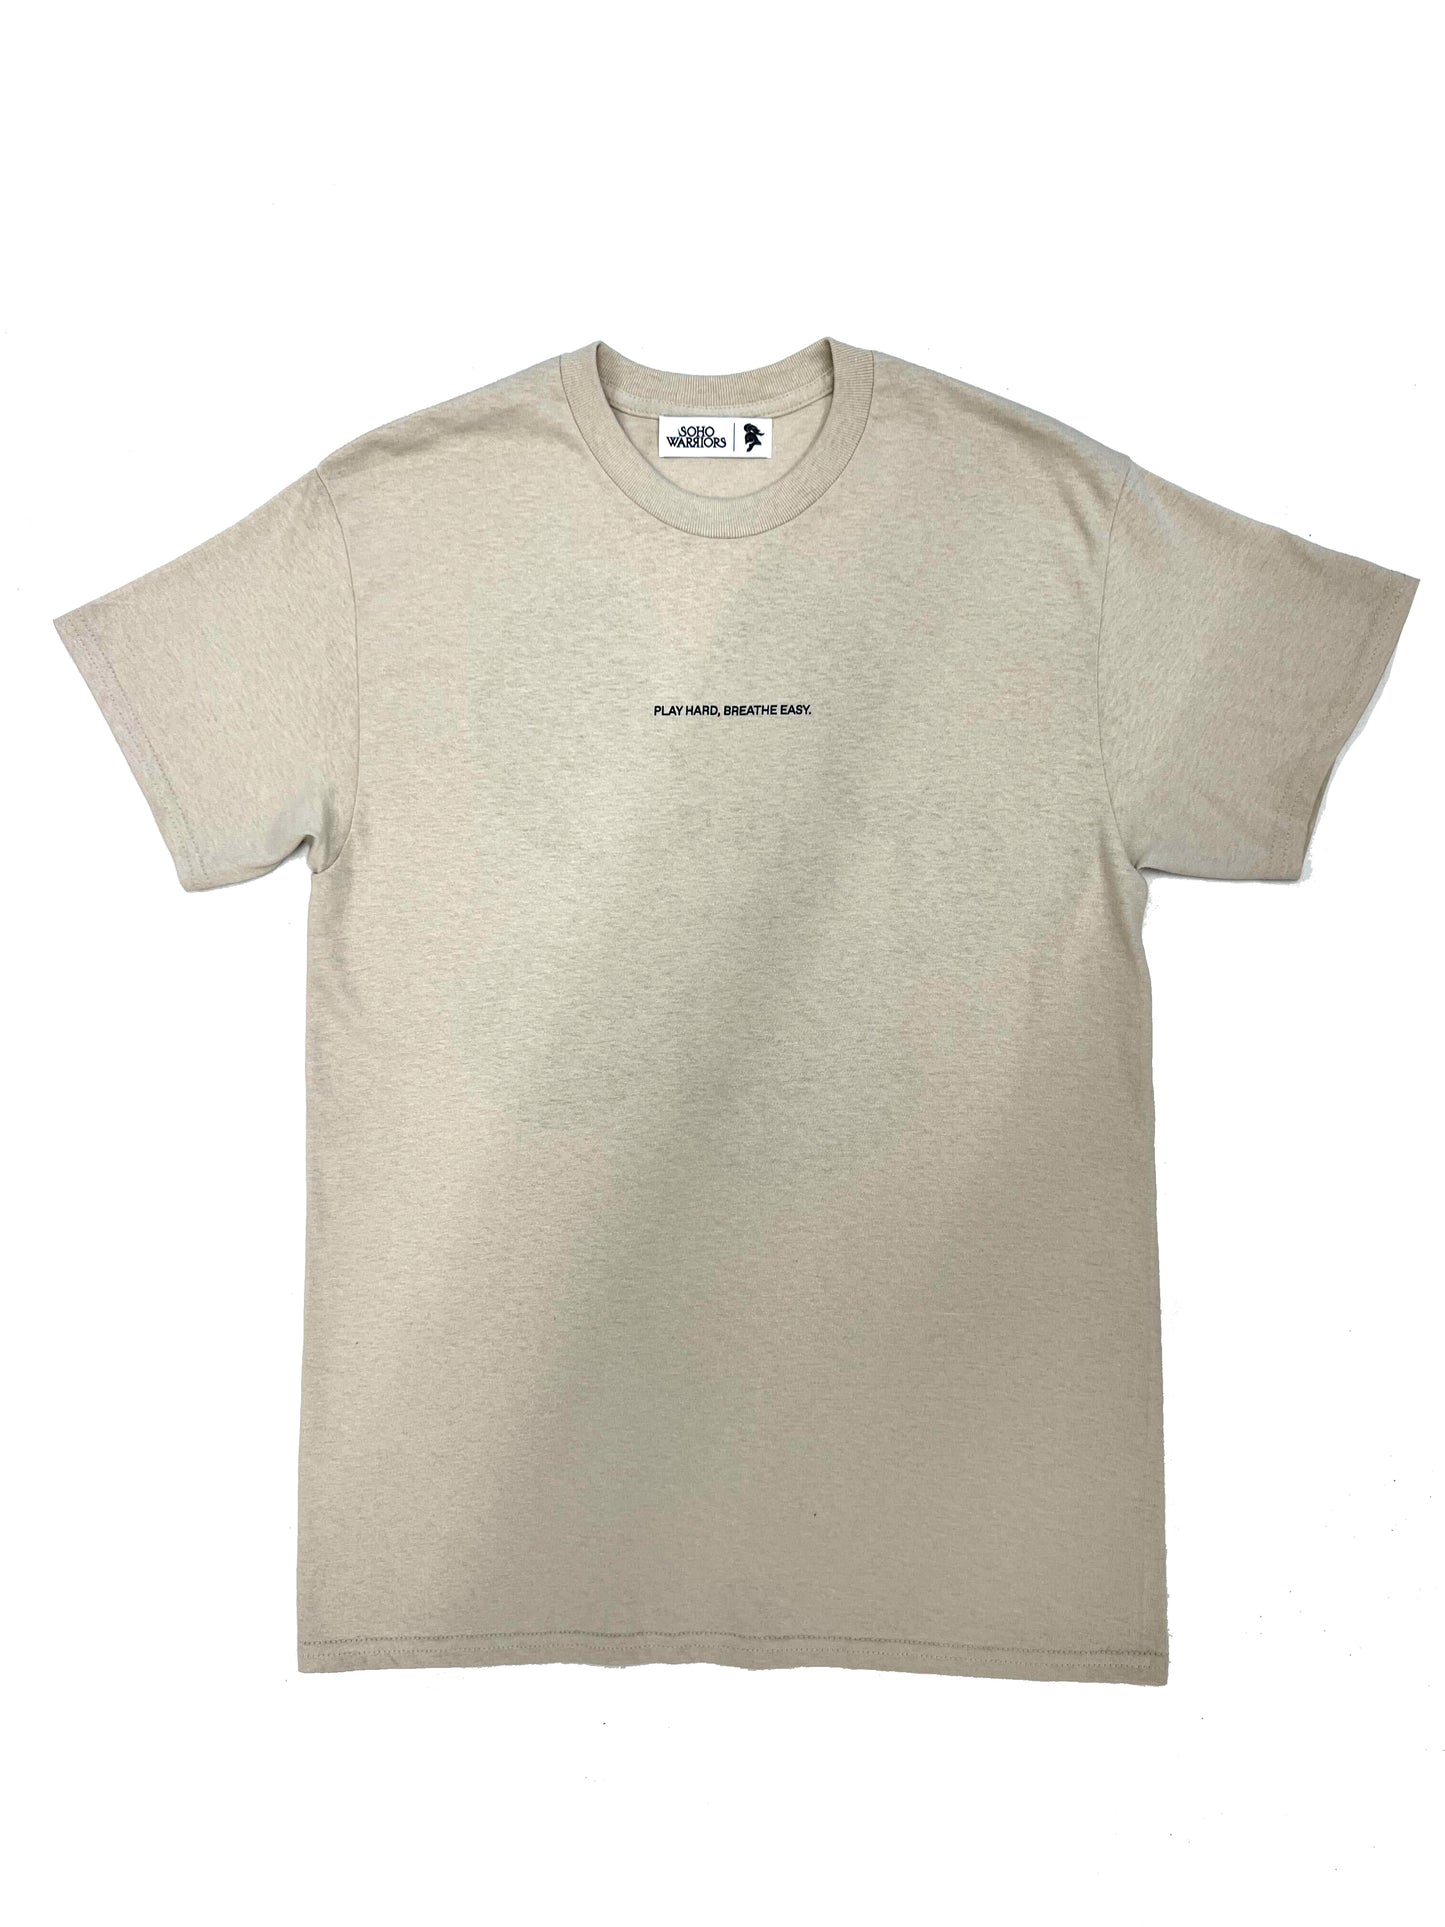 Clean Air T-Shirt (Natural)